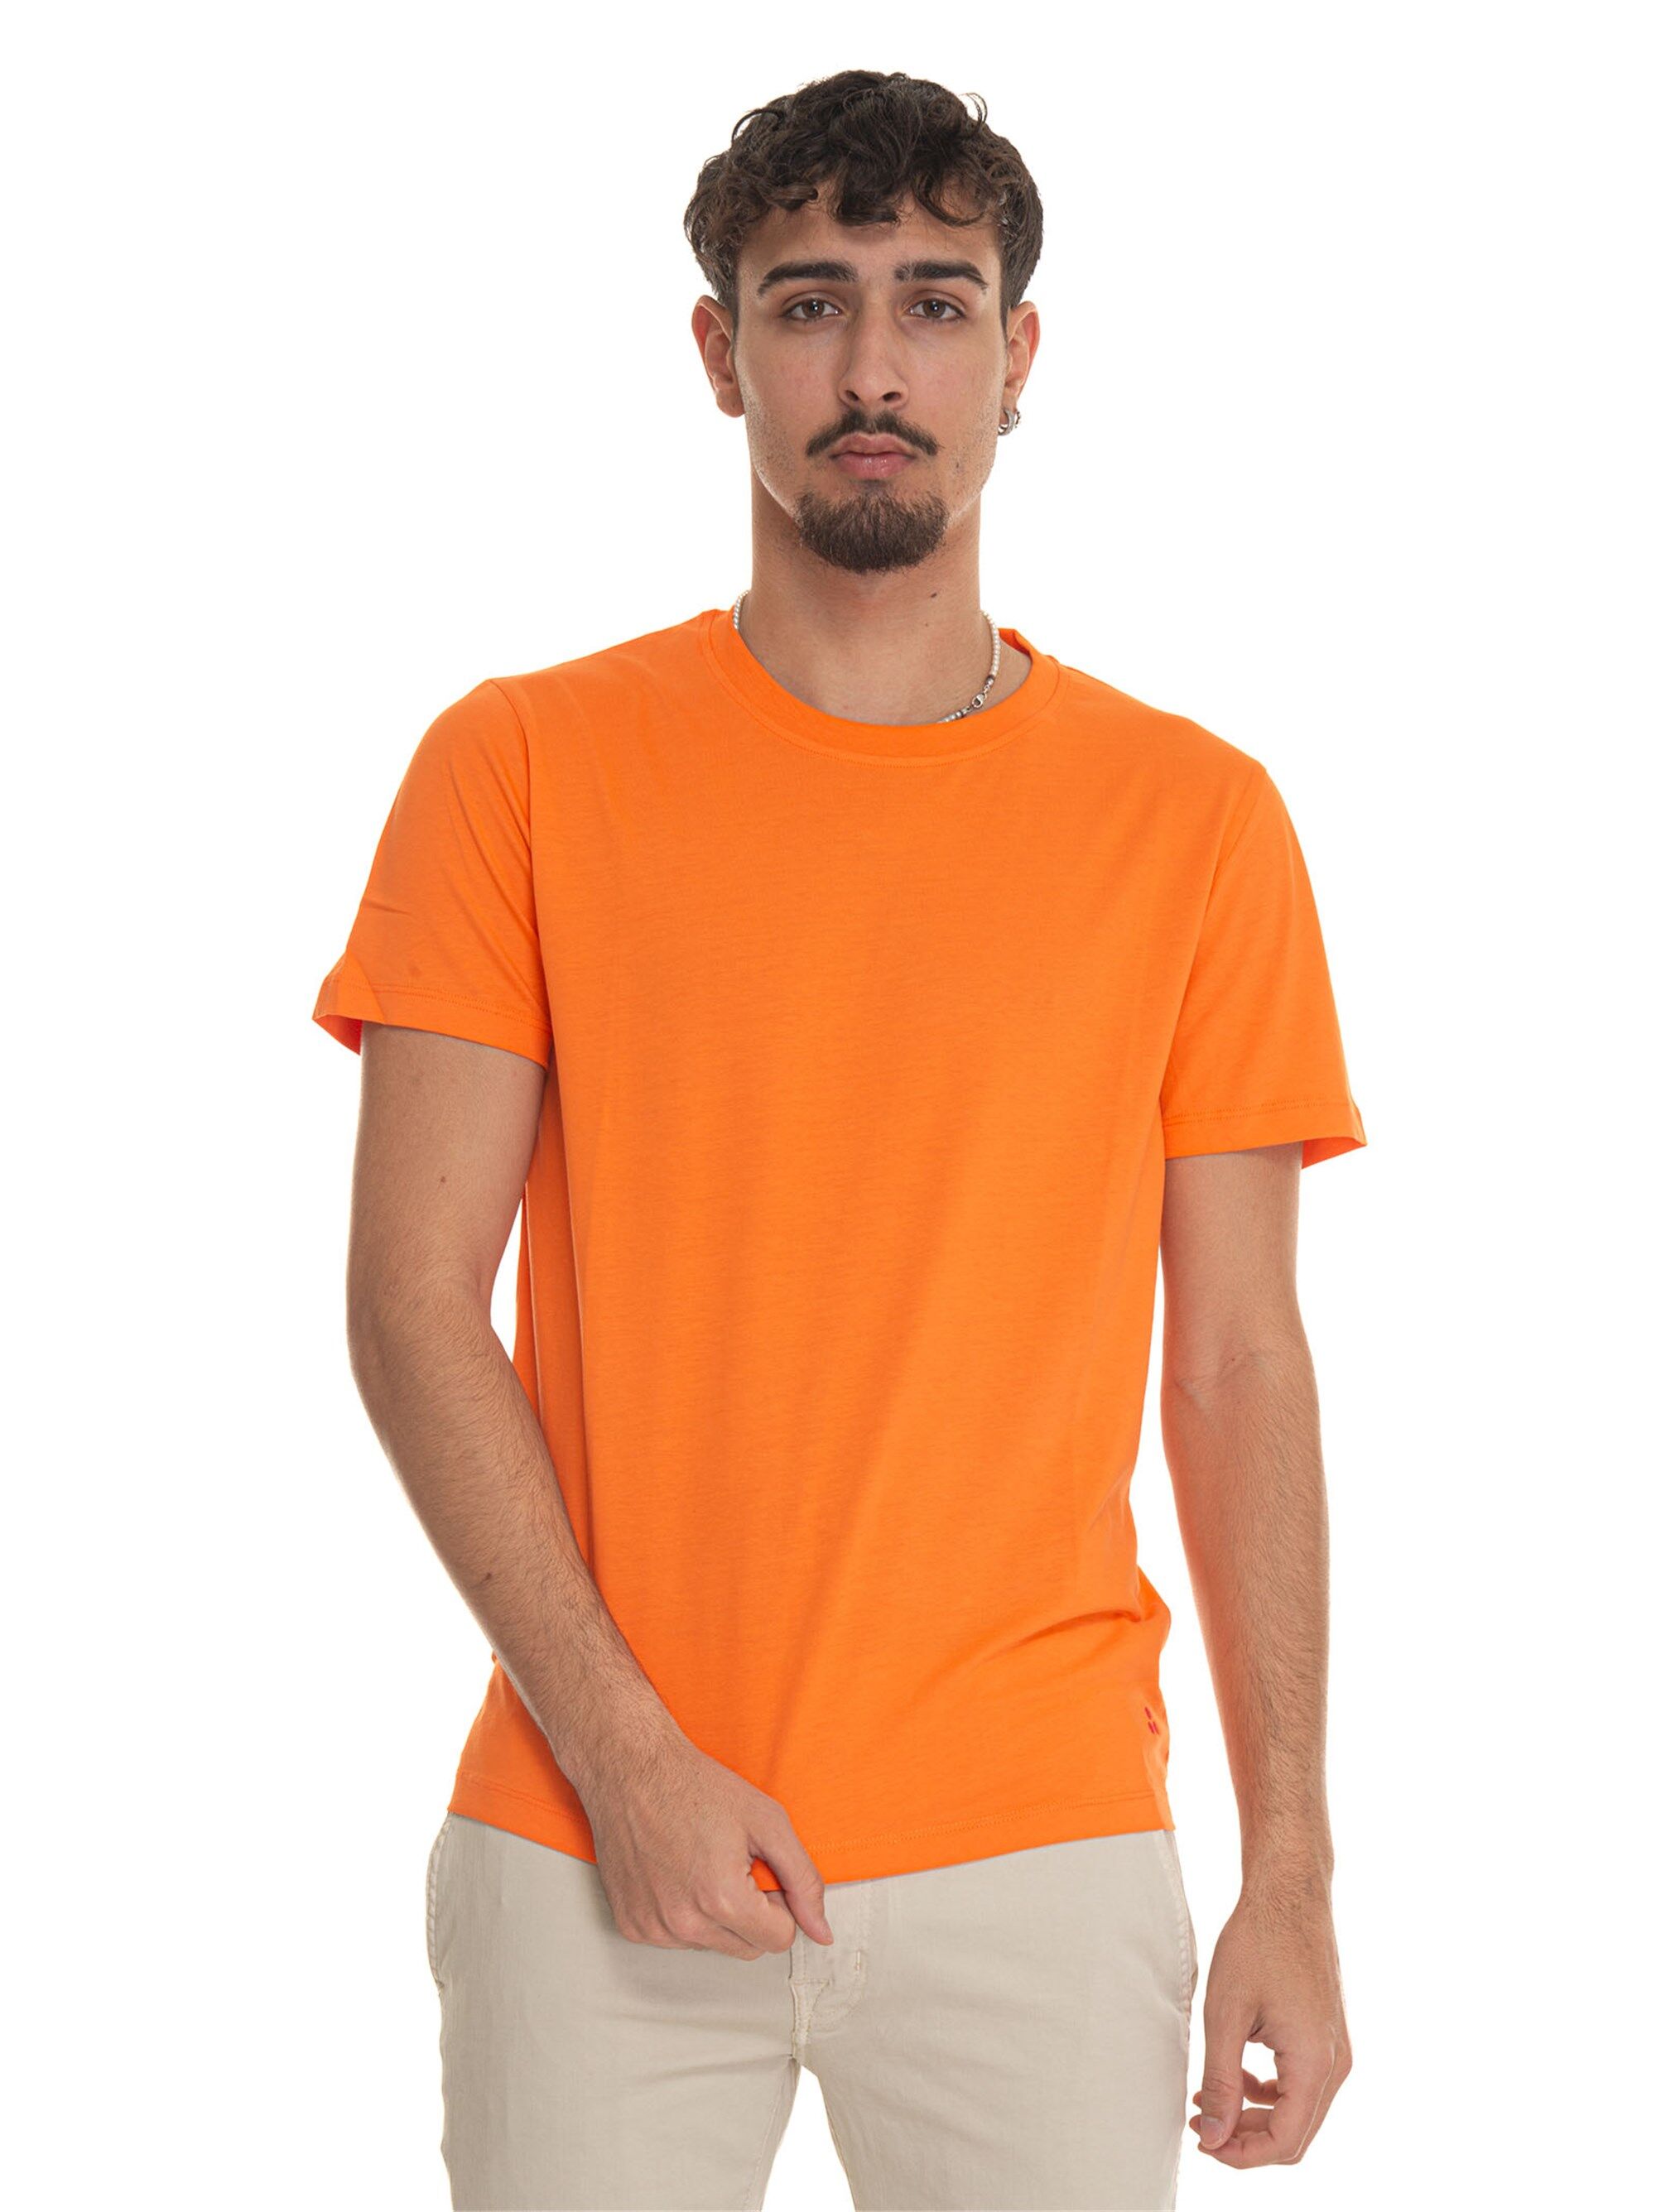 Peuterey T-shirt girocollo mezza manica MANDERLY01 Arancio Uomo L